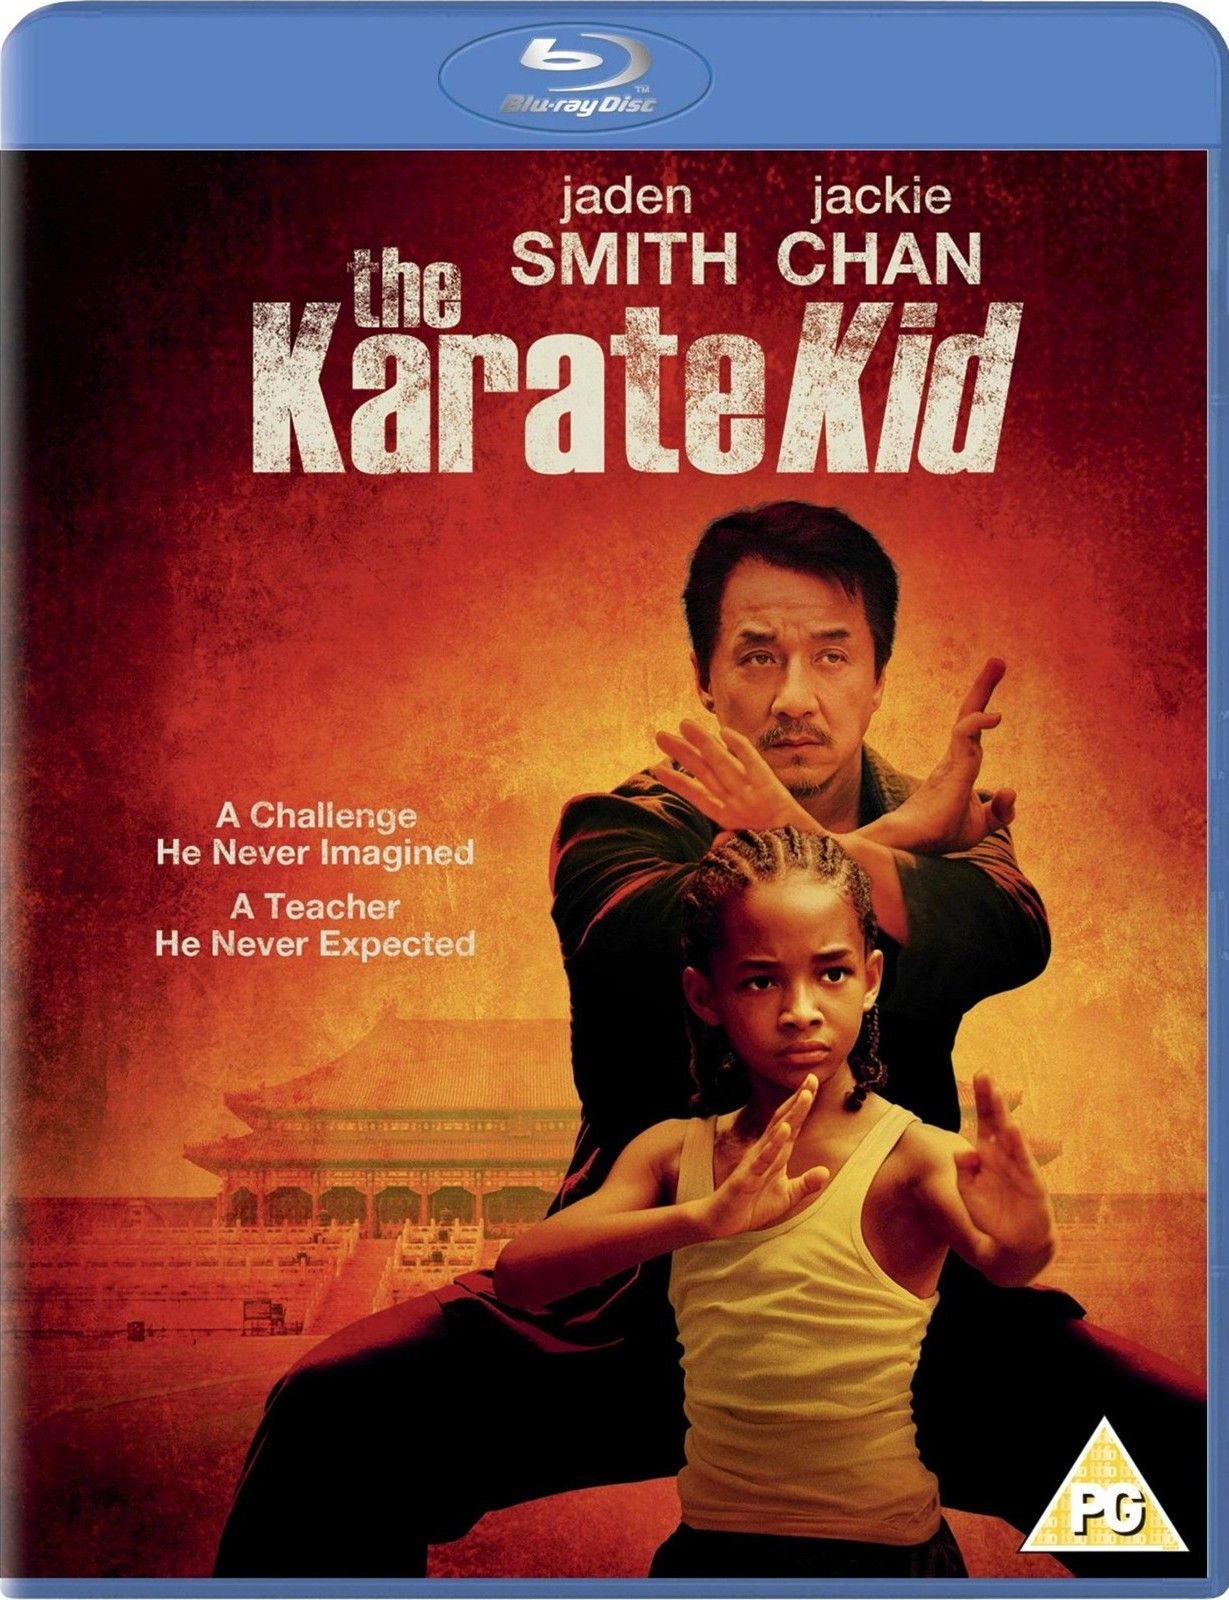 karate kid movie free download